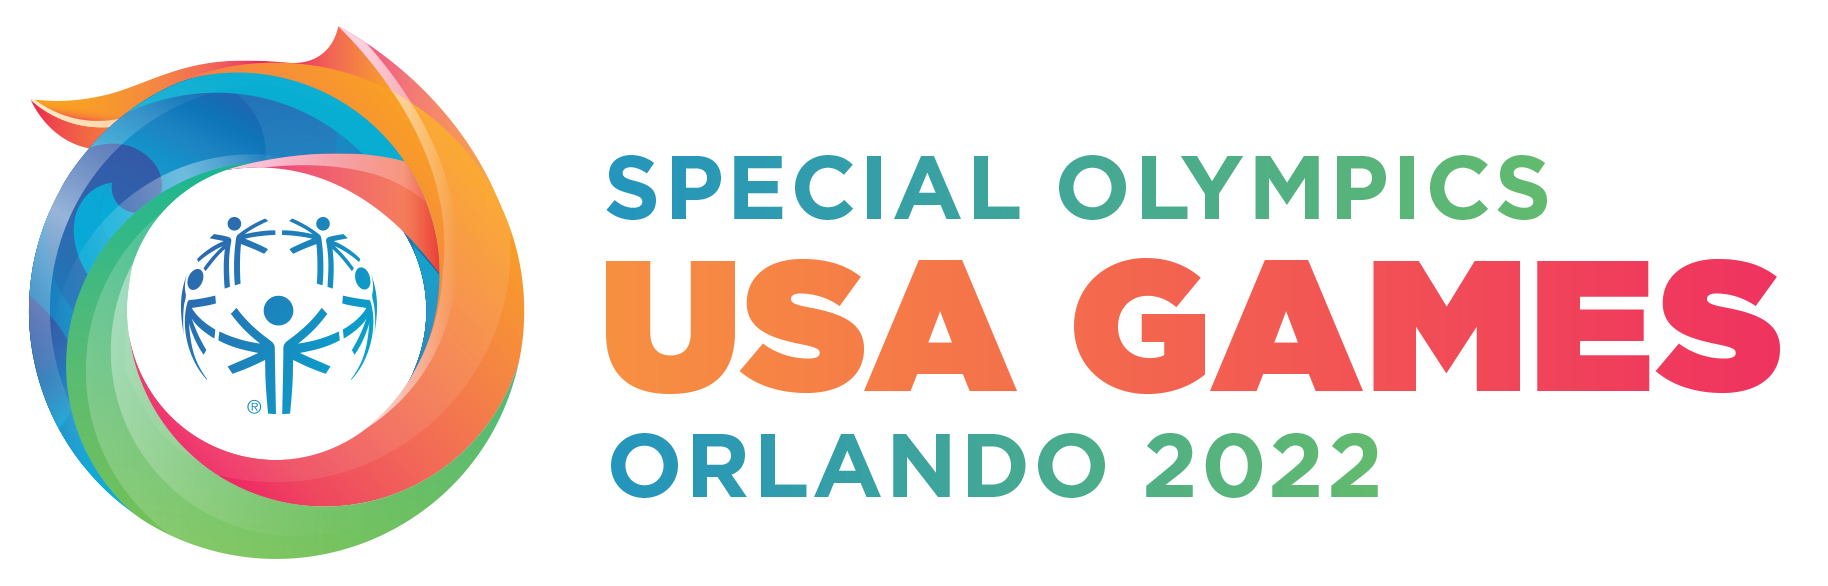 Special Olympics USA 2022 logo